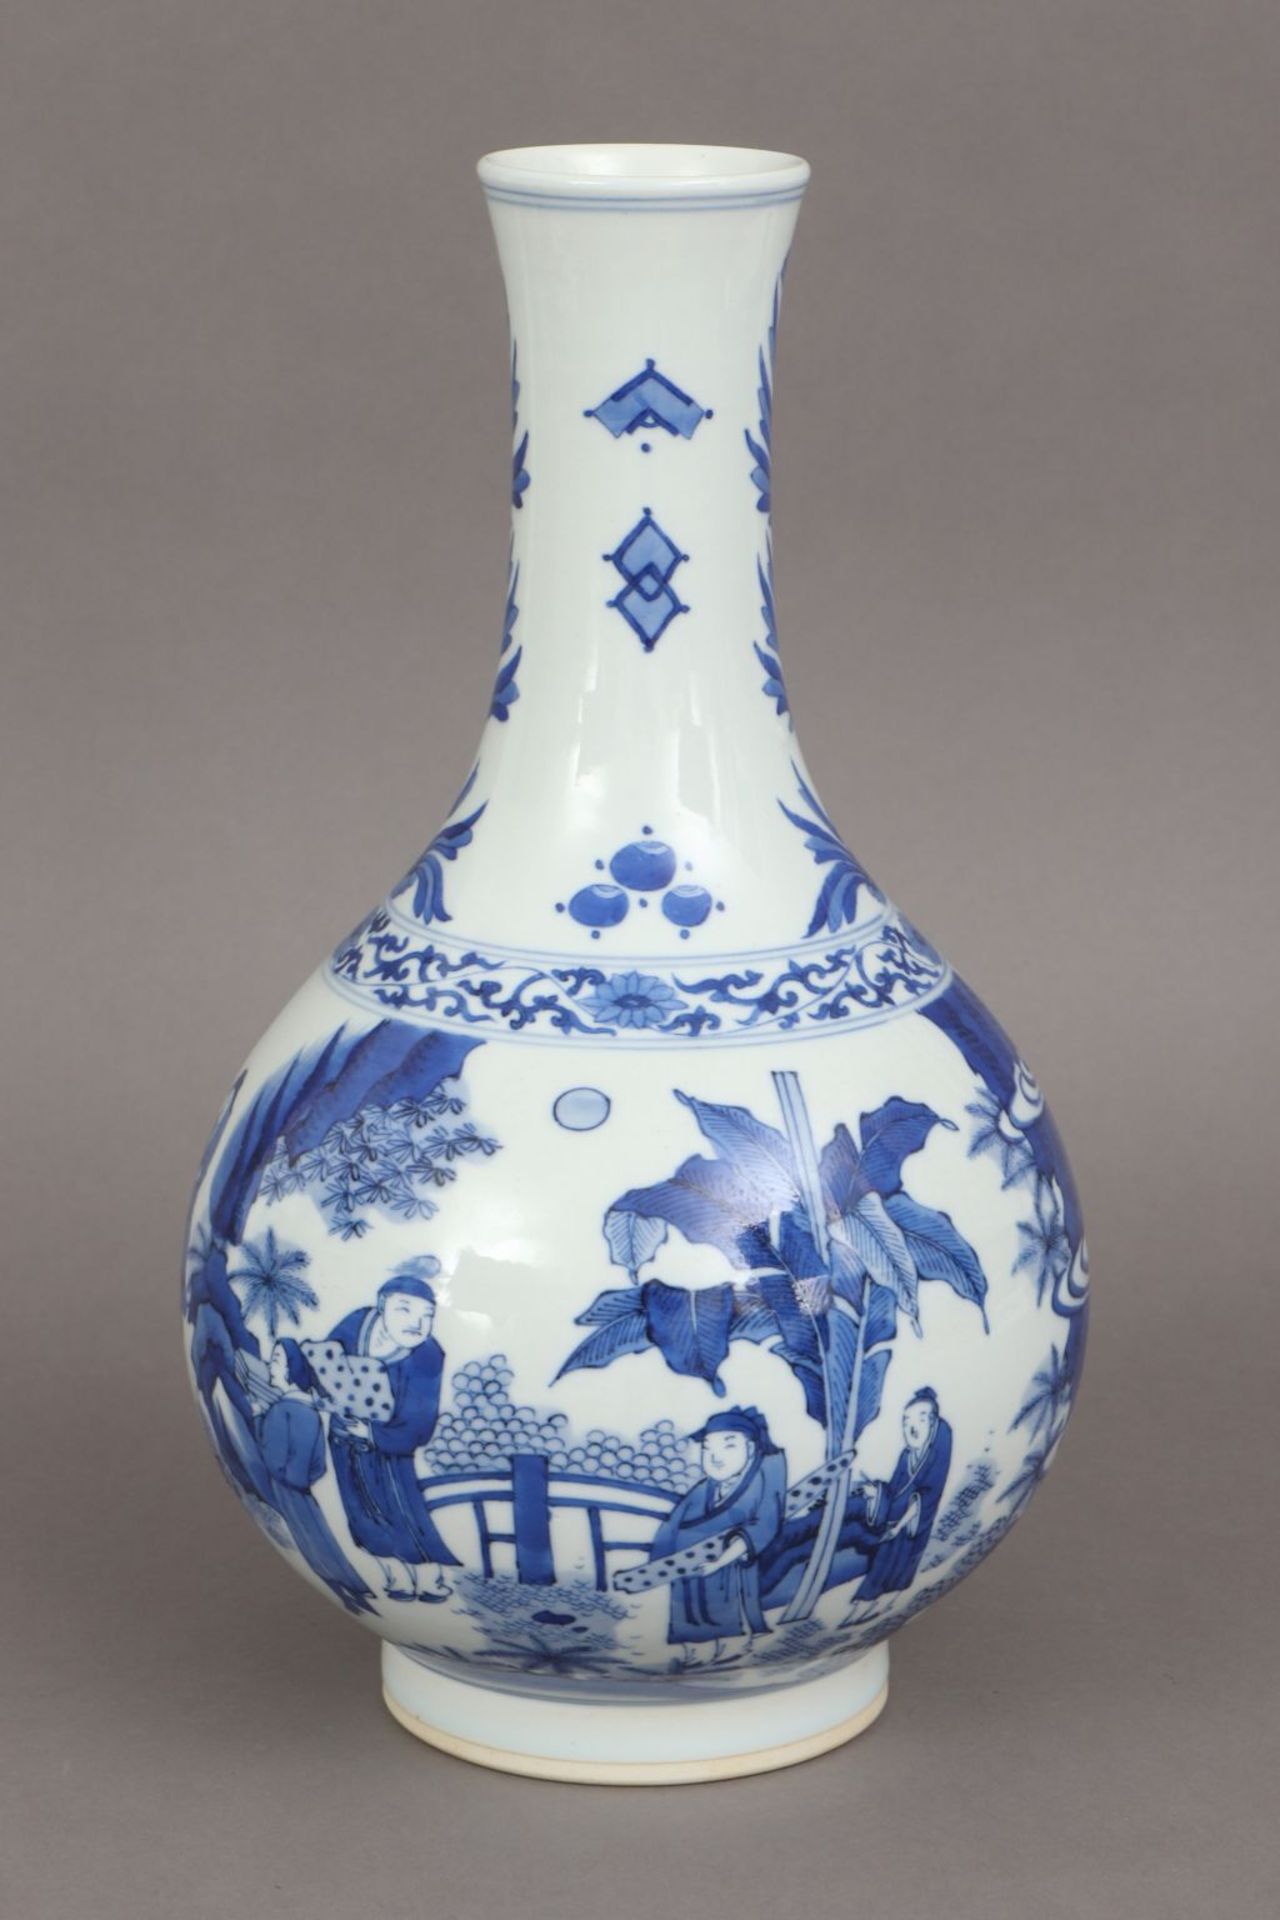 Chinesische Porzellanvase mit Blaumalereiknoblauchförmiger Korpus, umlaufend asiatische Landsc - Bild 2 aus 4